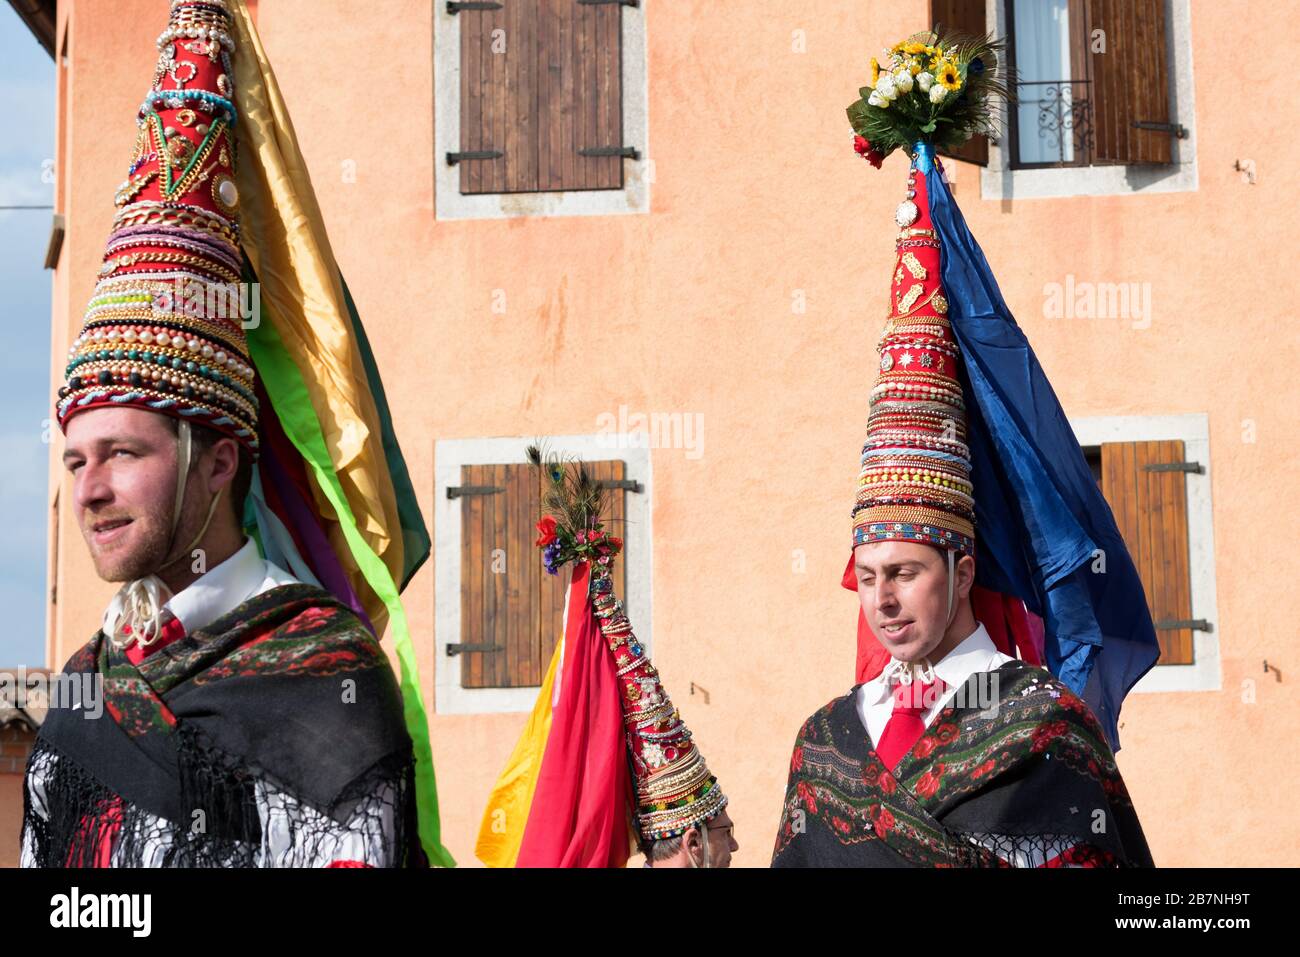 Männer in Karnevalskostüm während des Karnevalsumzugs Pust. Romeno Folkgruppe aus Trient. Mehrfarbig dekorierte Kegelhüte. Italienische Tradition. Italien Stockfoto